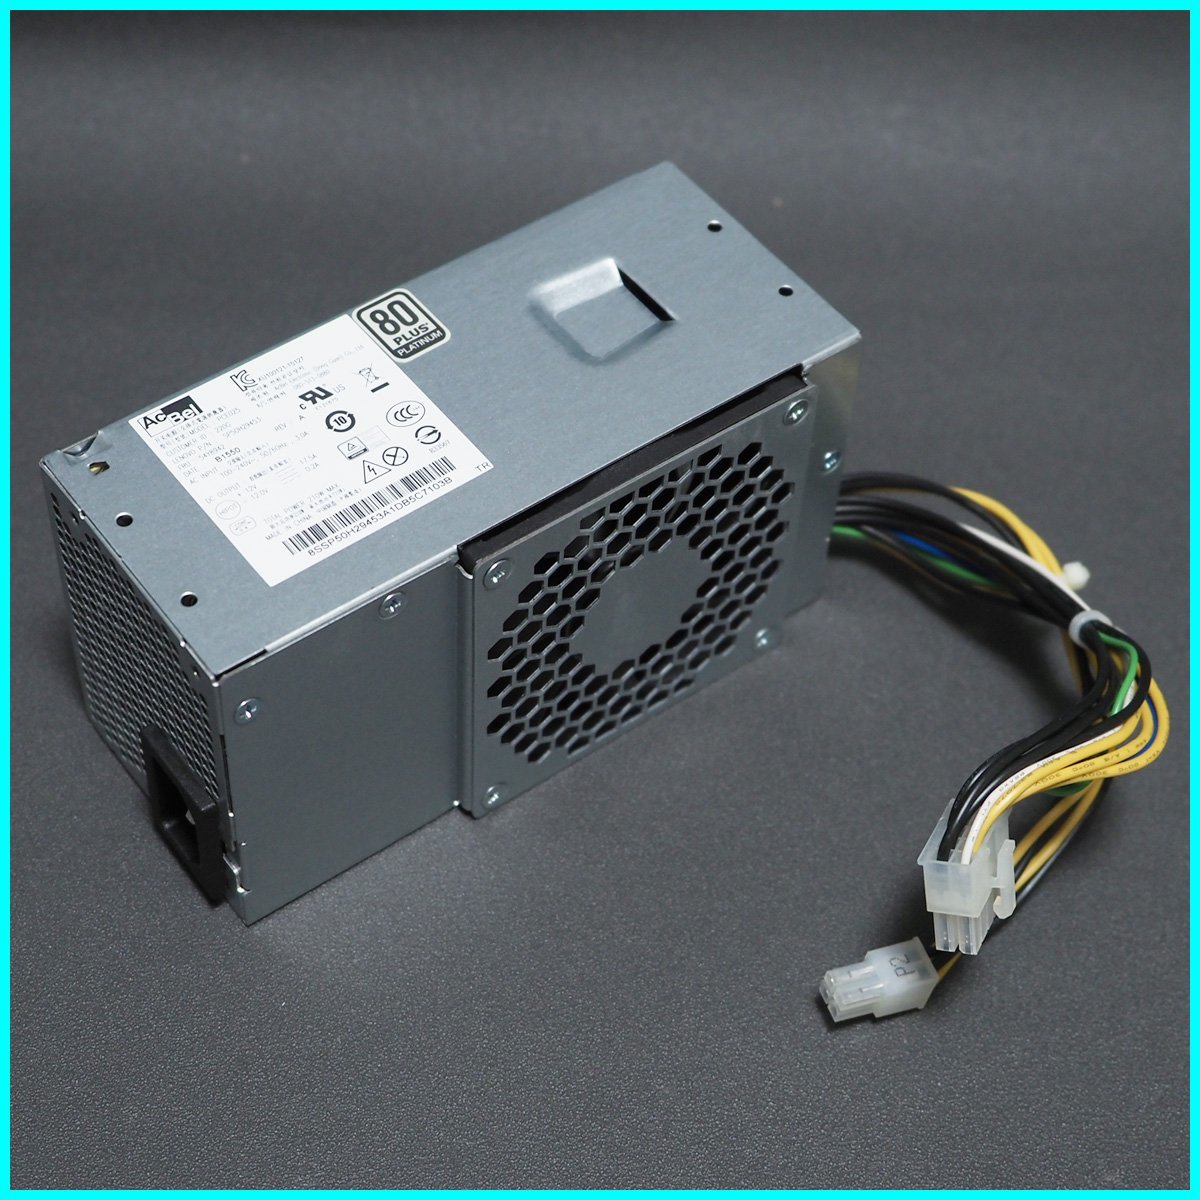 NEC Mate MK32ME-P power supply AcBel PCE025 LENOVO P/N:SP50H29453 FRU:54Y8942 80 PLUS PLATINUM 210W